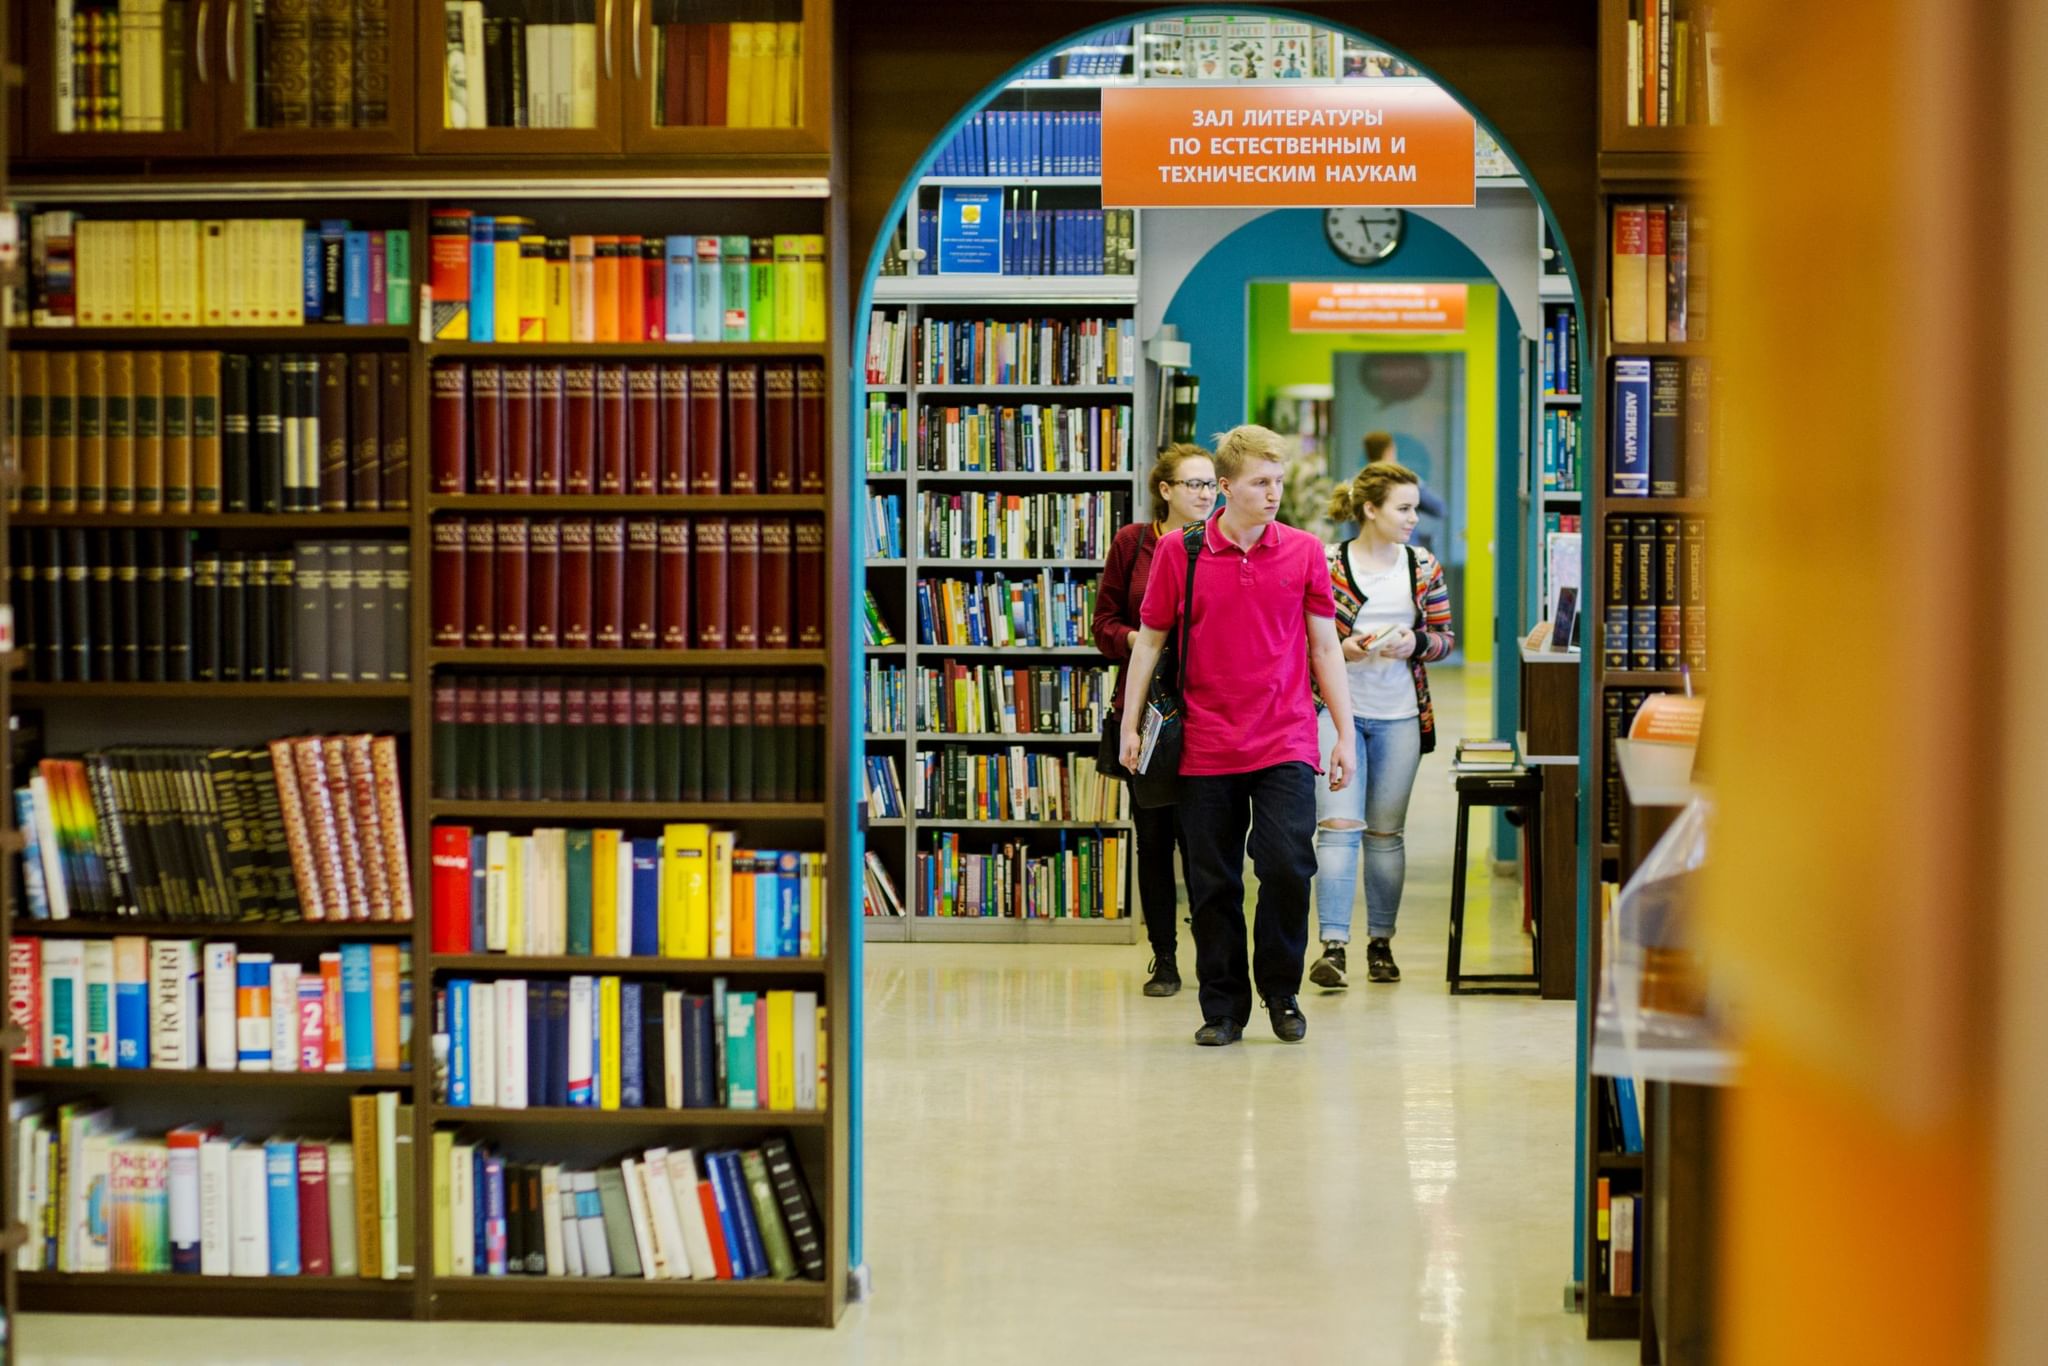 Чтение в научных библиотеках. РГБМ библиотека для молодёжи. Евразийская библиотека в Уфе. Читатели в библиотеке. Современная библиотека.